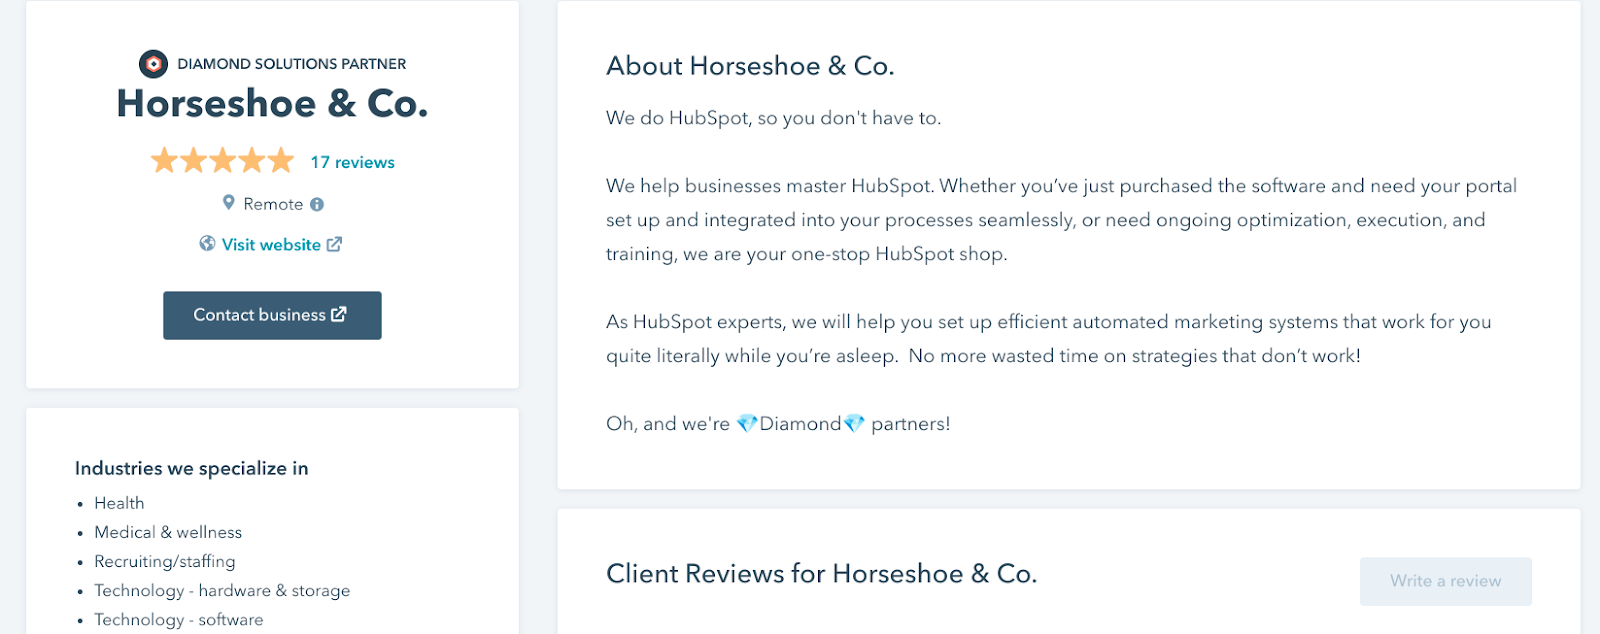 Horseshoe & Co's HubSpot listing